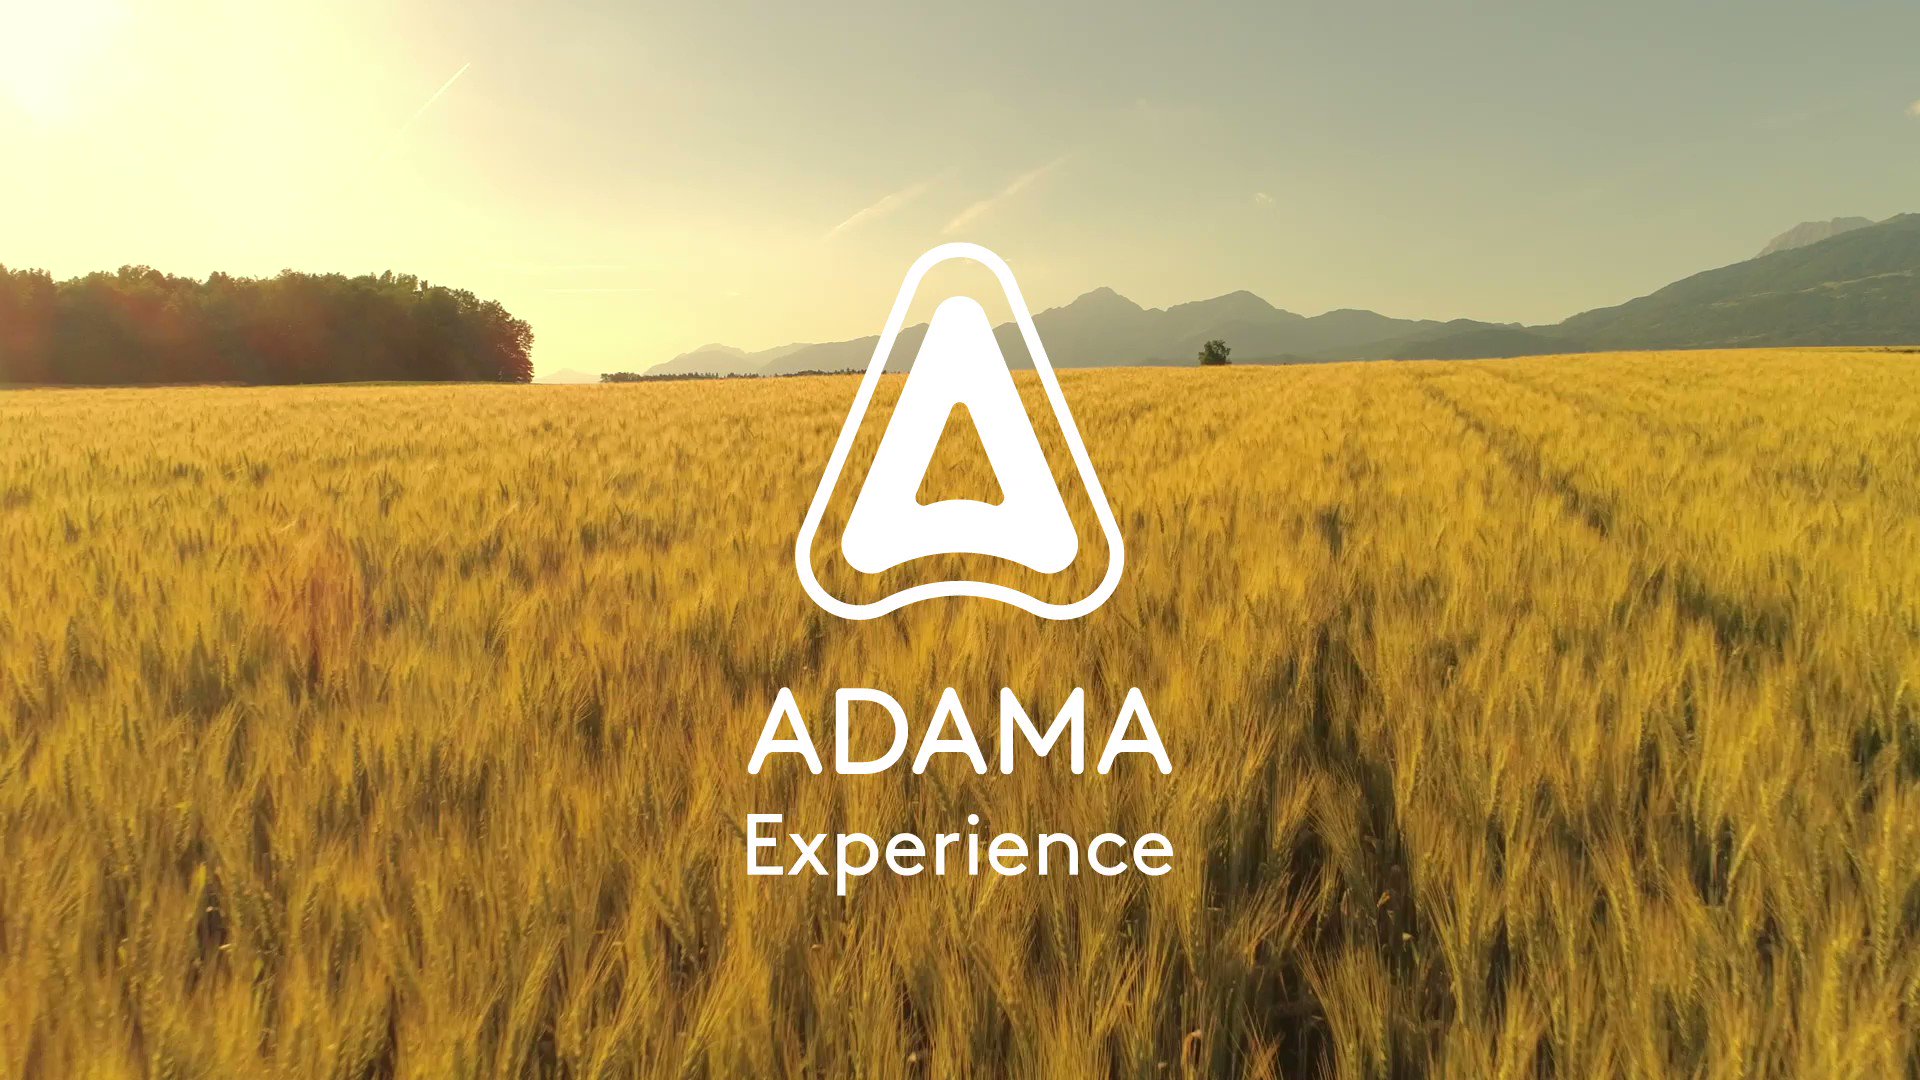 Más de 100 agricultores y técnicos agrícolas, en el cierre de #ADAMAexperience